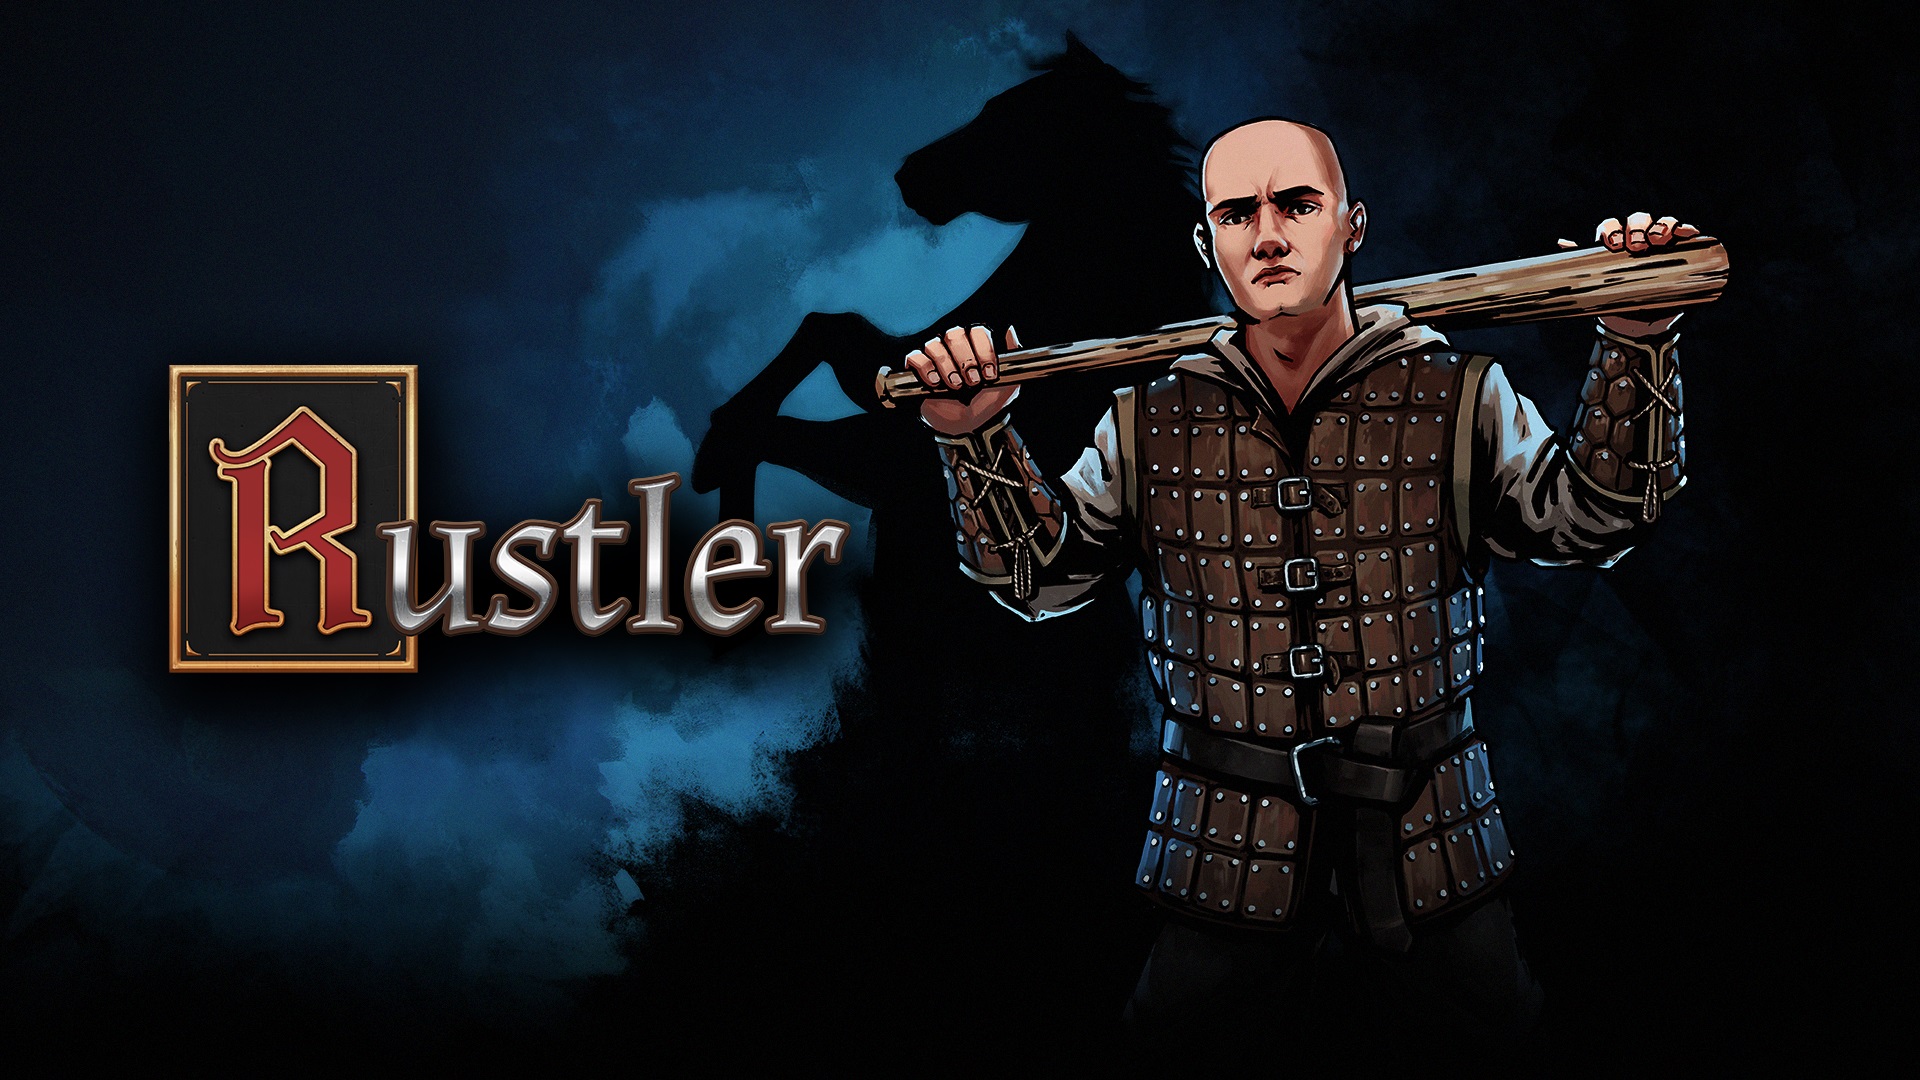 Rustler 03 18 21 1